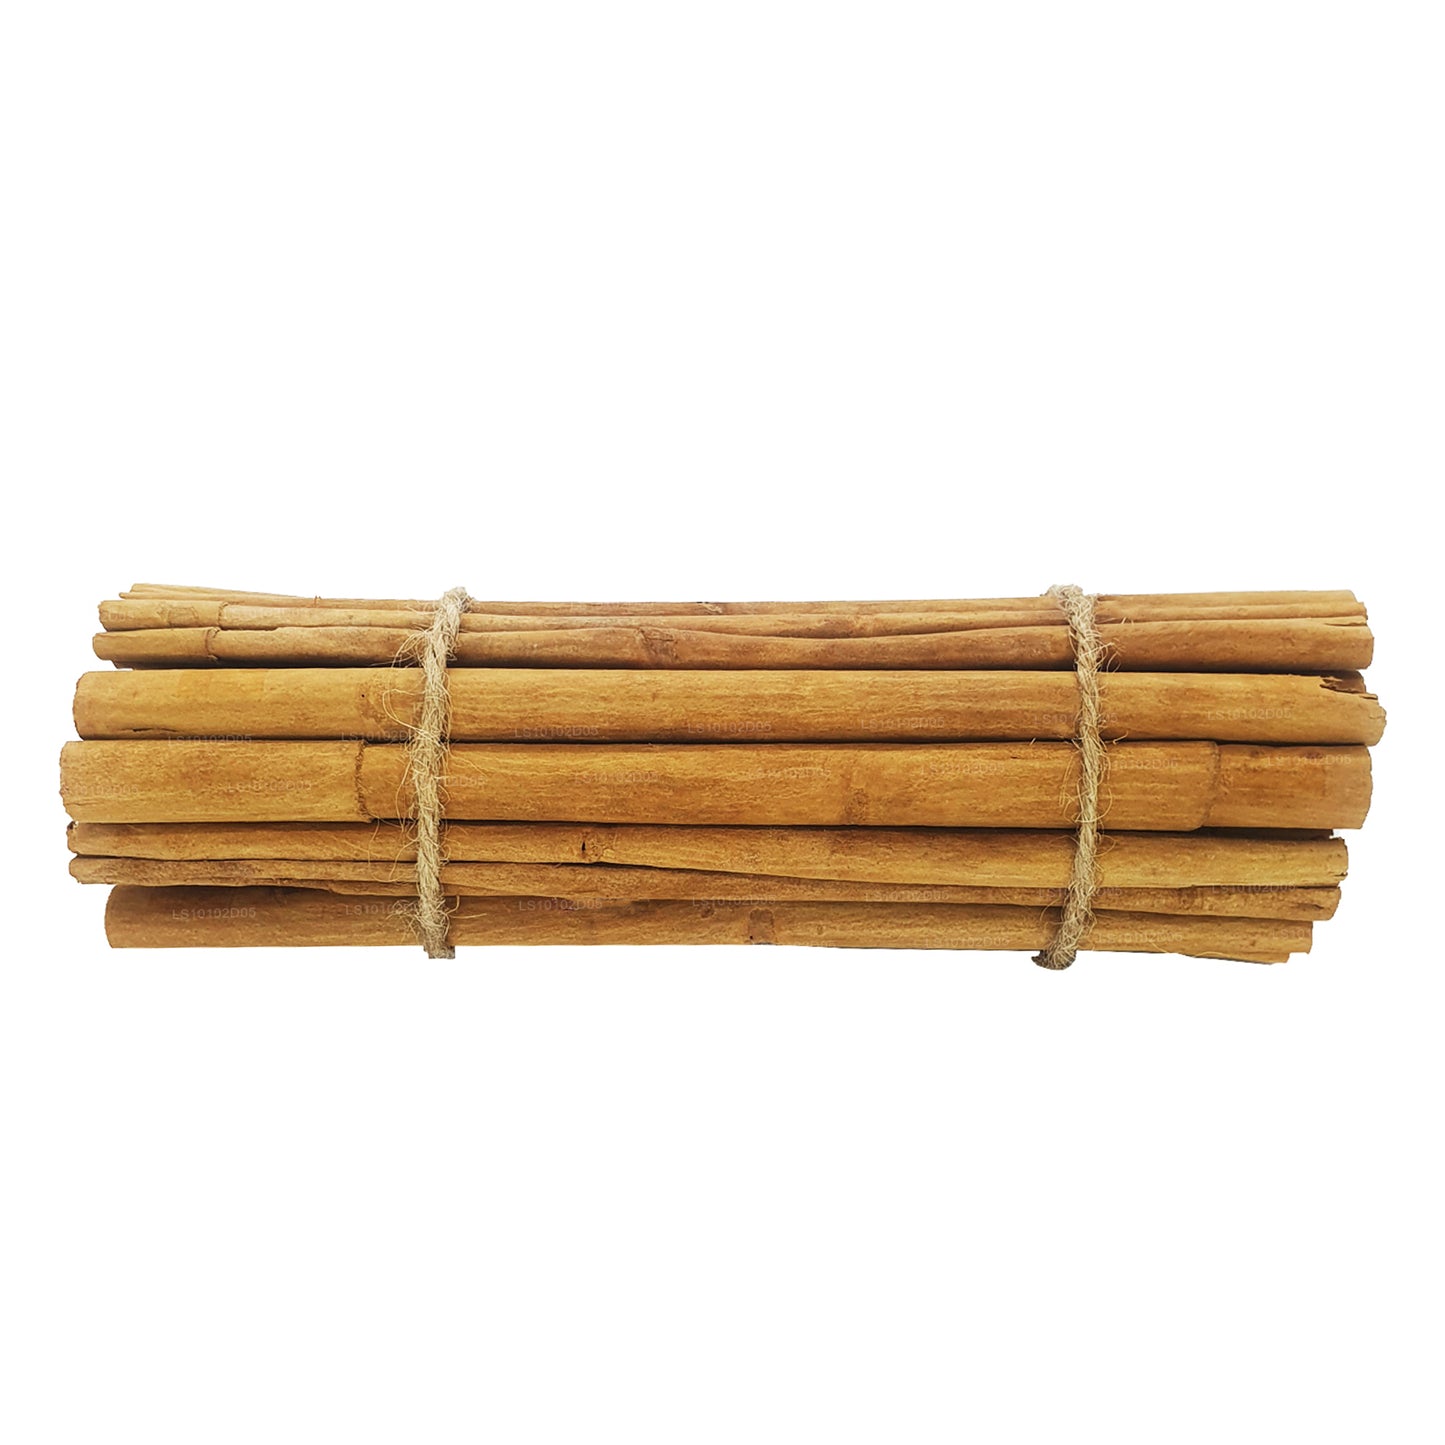 Lakpura "C5 Special" Grade Ceylon True Cinnamon Barks Pack